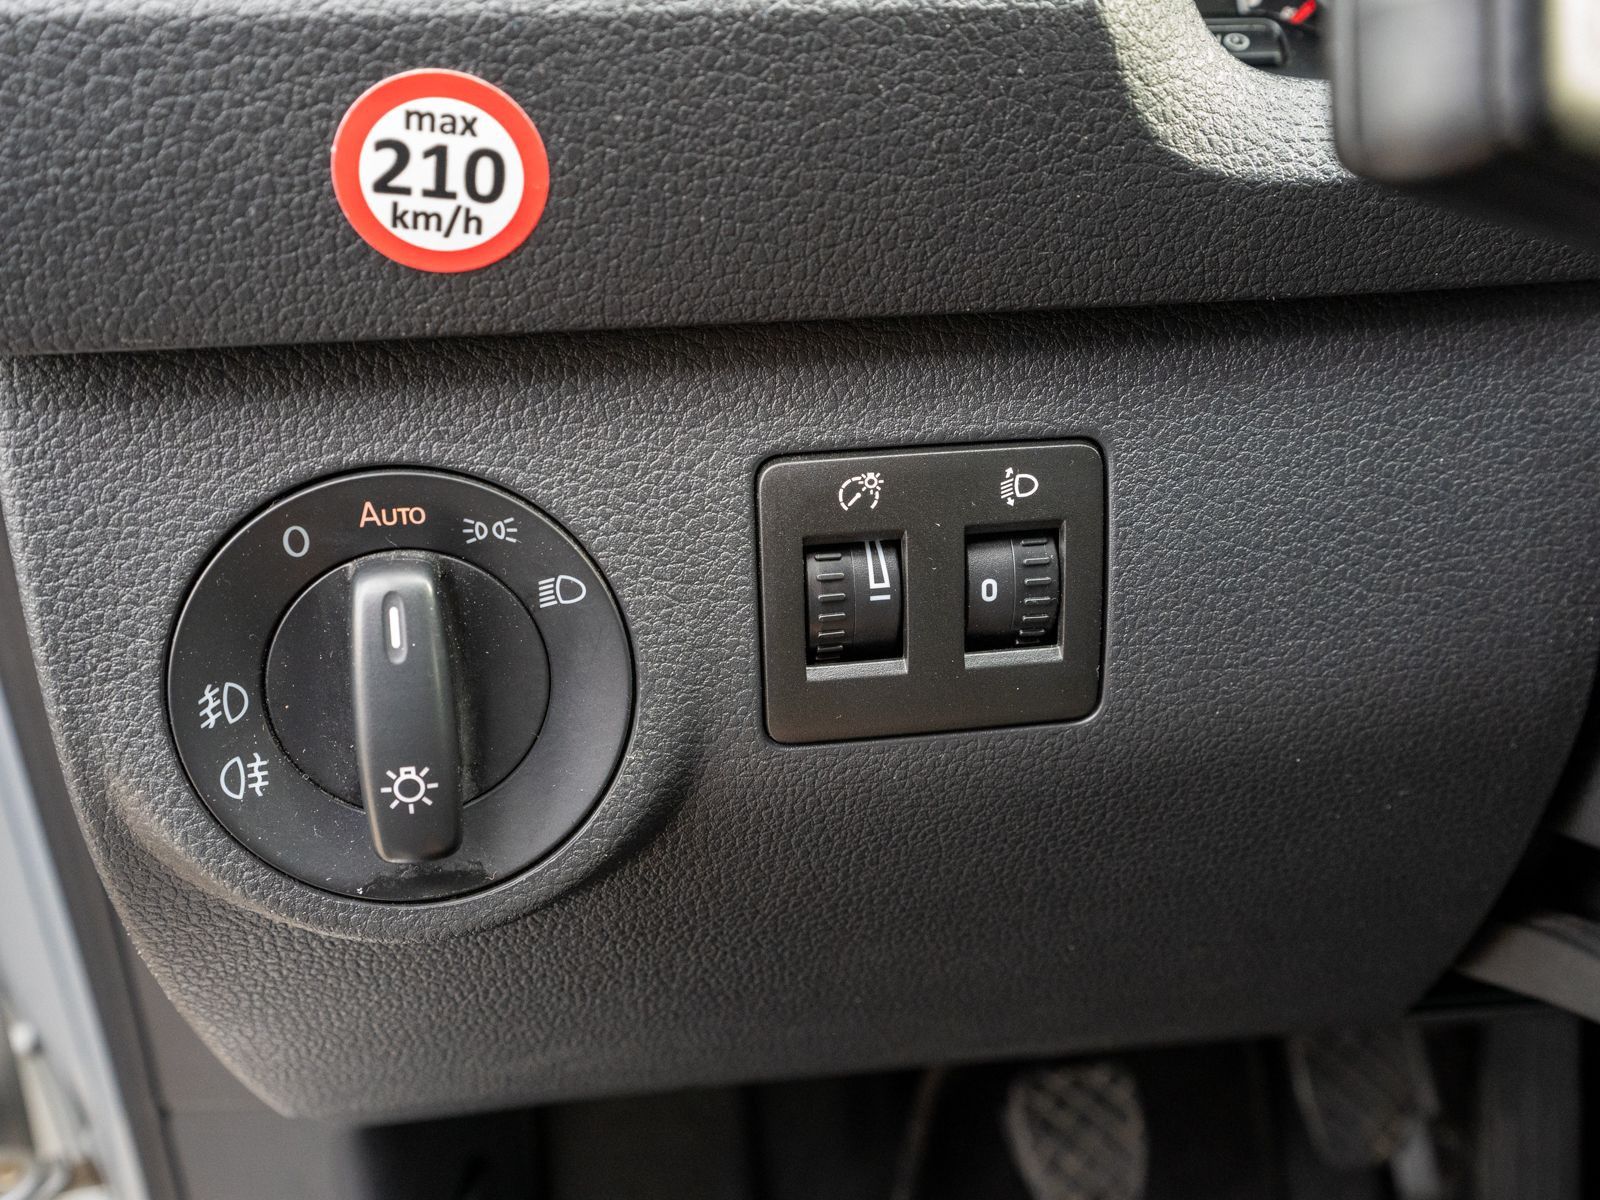 Fahrzeugabbildung Volkswagen Caddy Kombi 2.0 TDI Klimaanlage Sitzheizung PDC